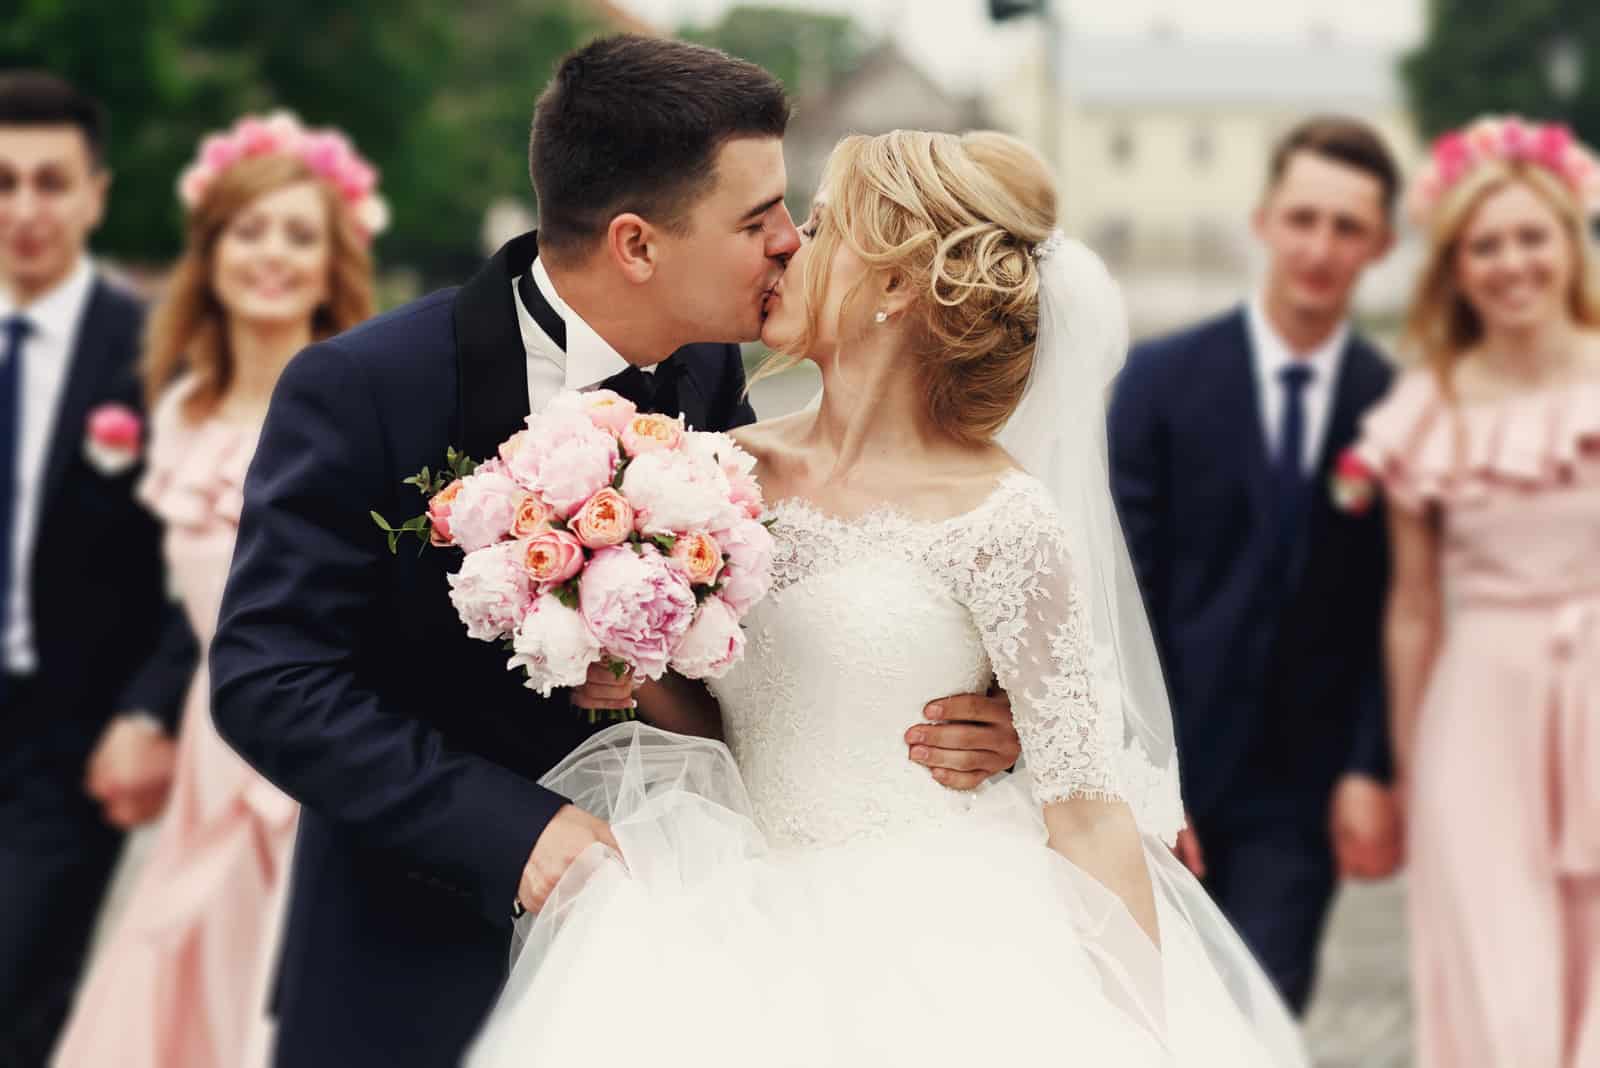 Hübscher Bräutigam, der schöne Braut küsst